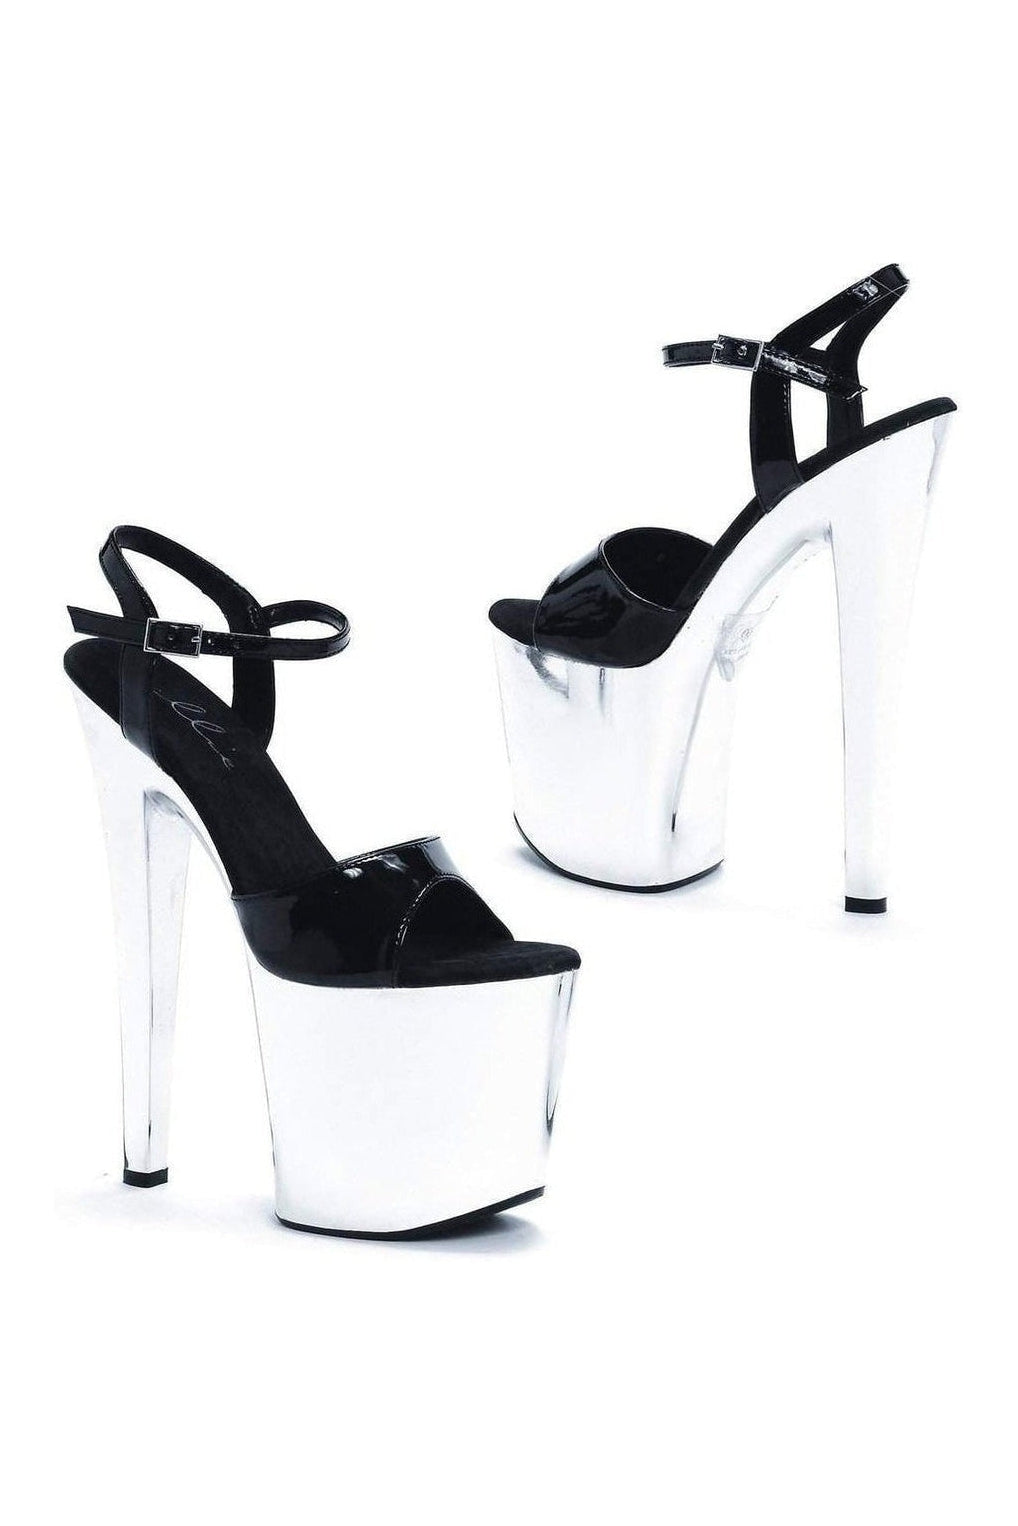 821-CHROME Platform Sandal | Black Multi Patent-Ellie Shoes-SEXYSHOES.COM